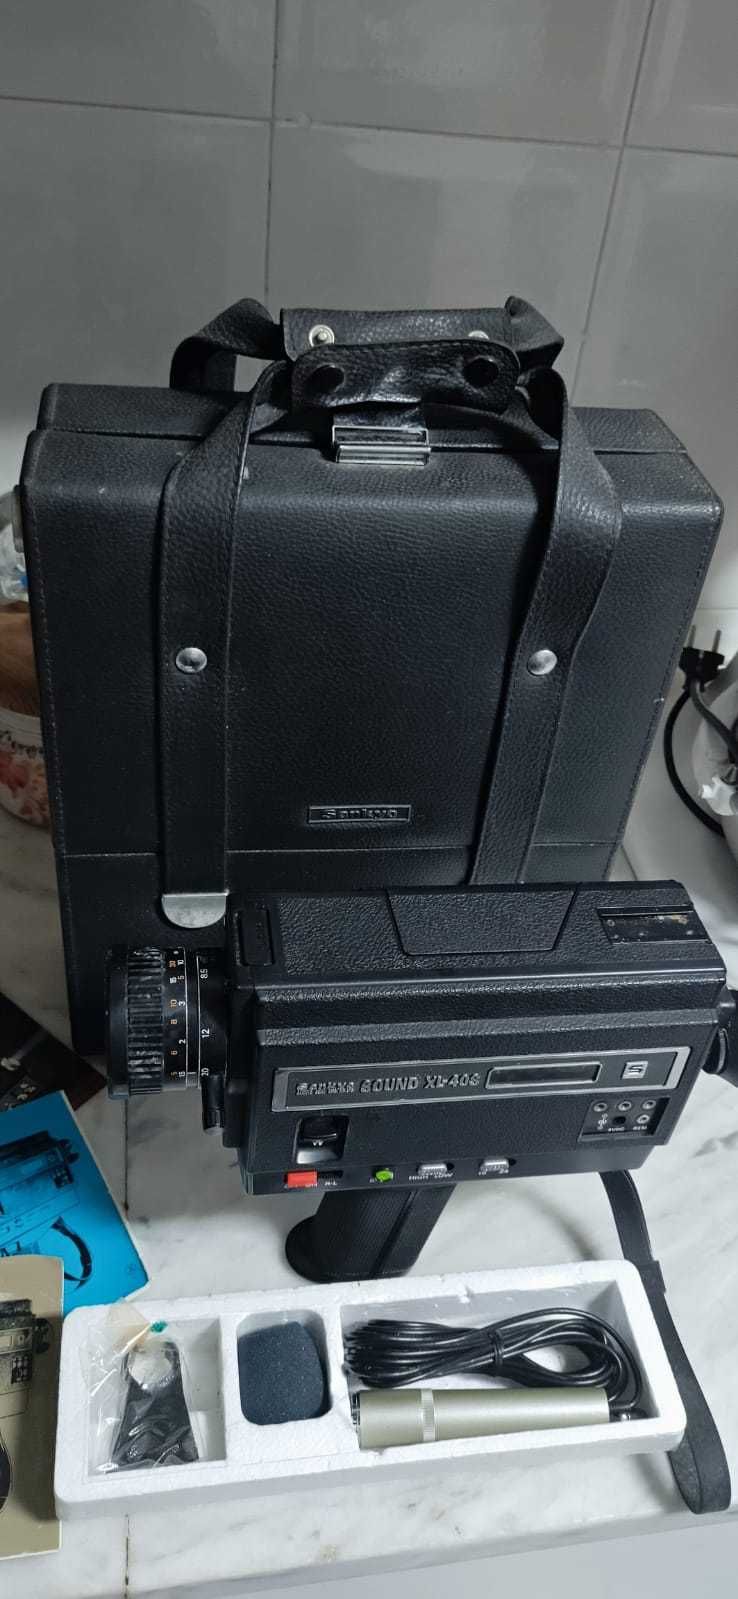 Maquina de filmar Sankyo XL-40S